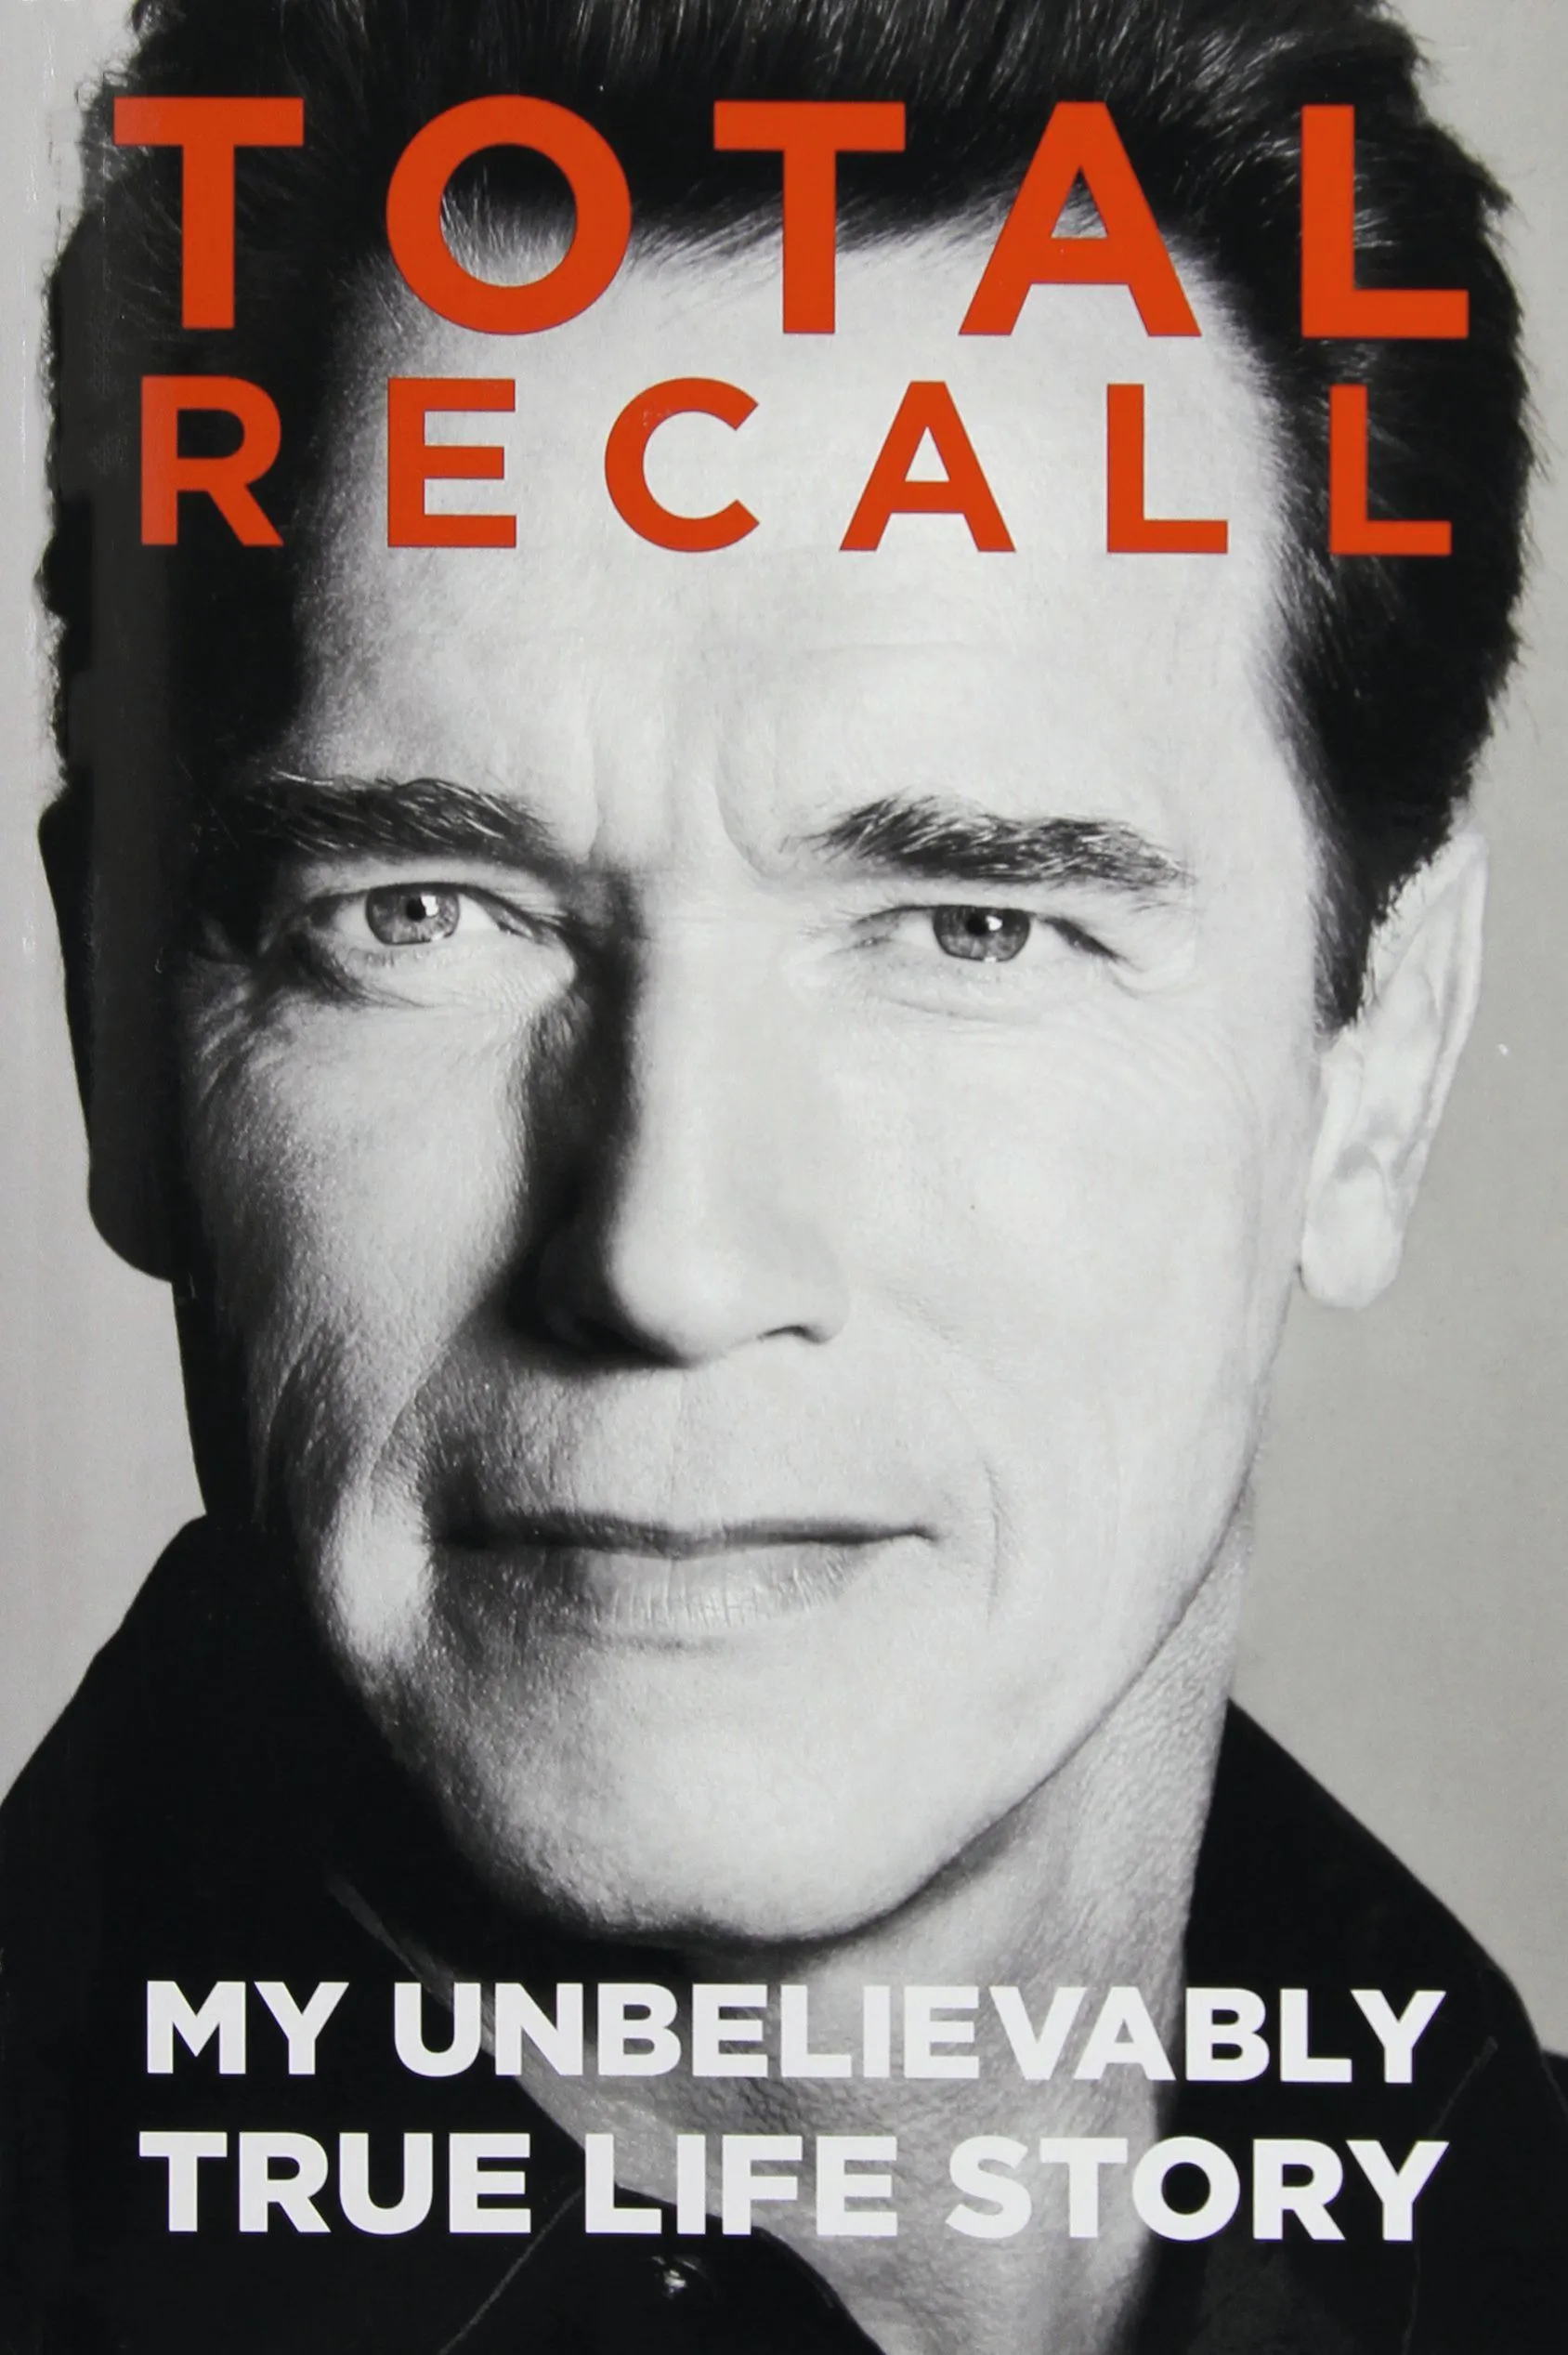 My Unbelievably True Life Story, Arnold Schwarzenegger, 2012